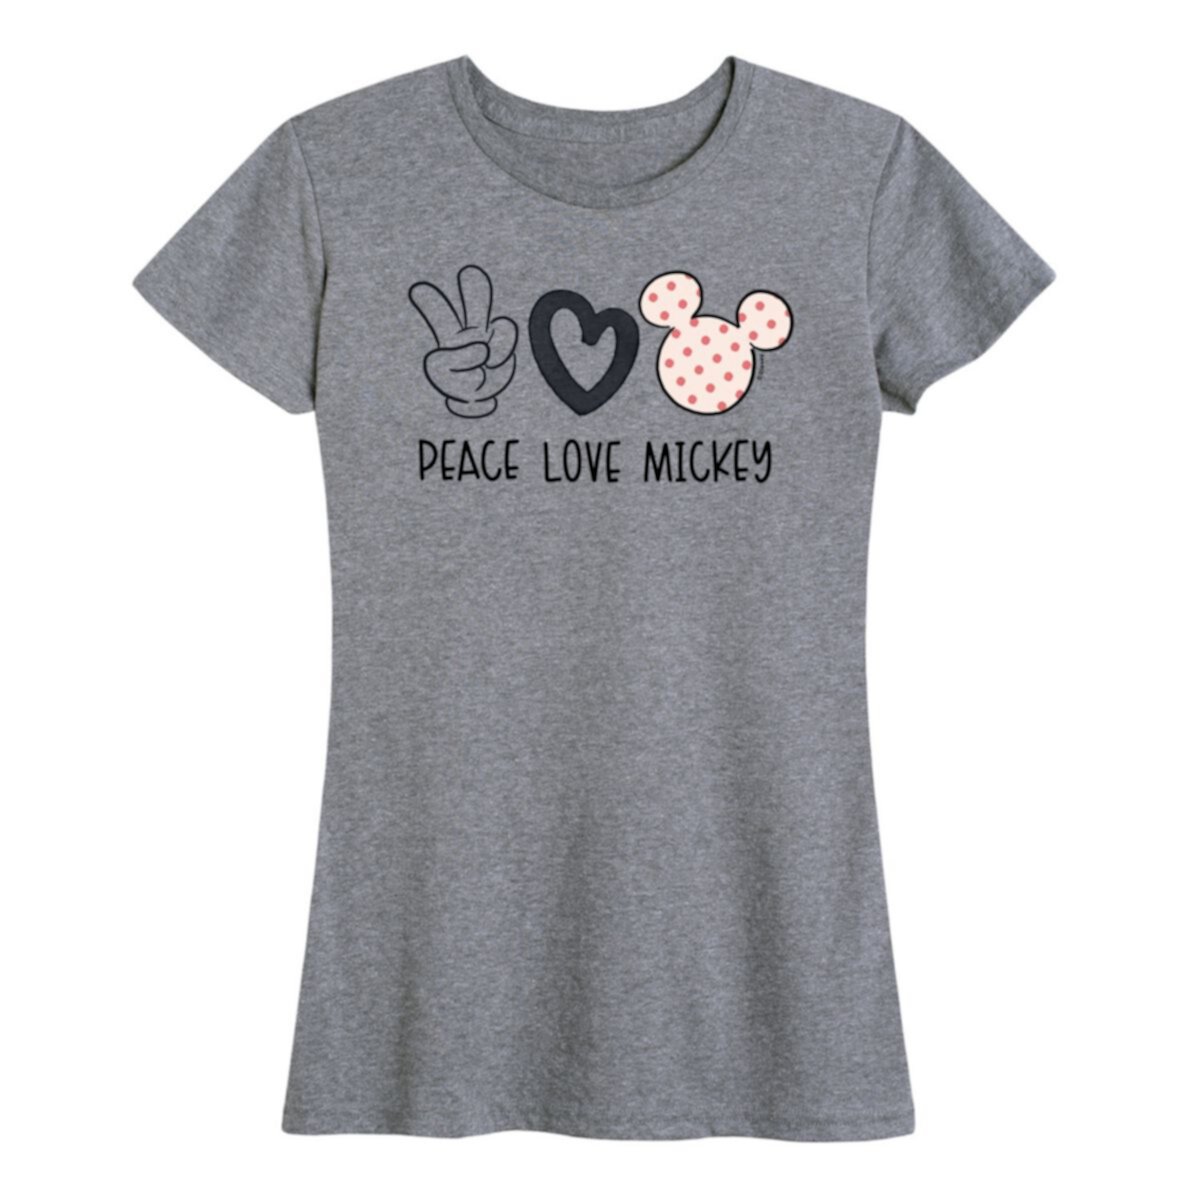 Женская футболка с рисунком Микки Мауса Disney's Peace Love Disney